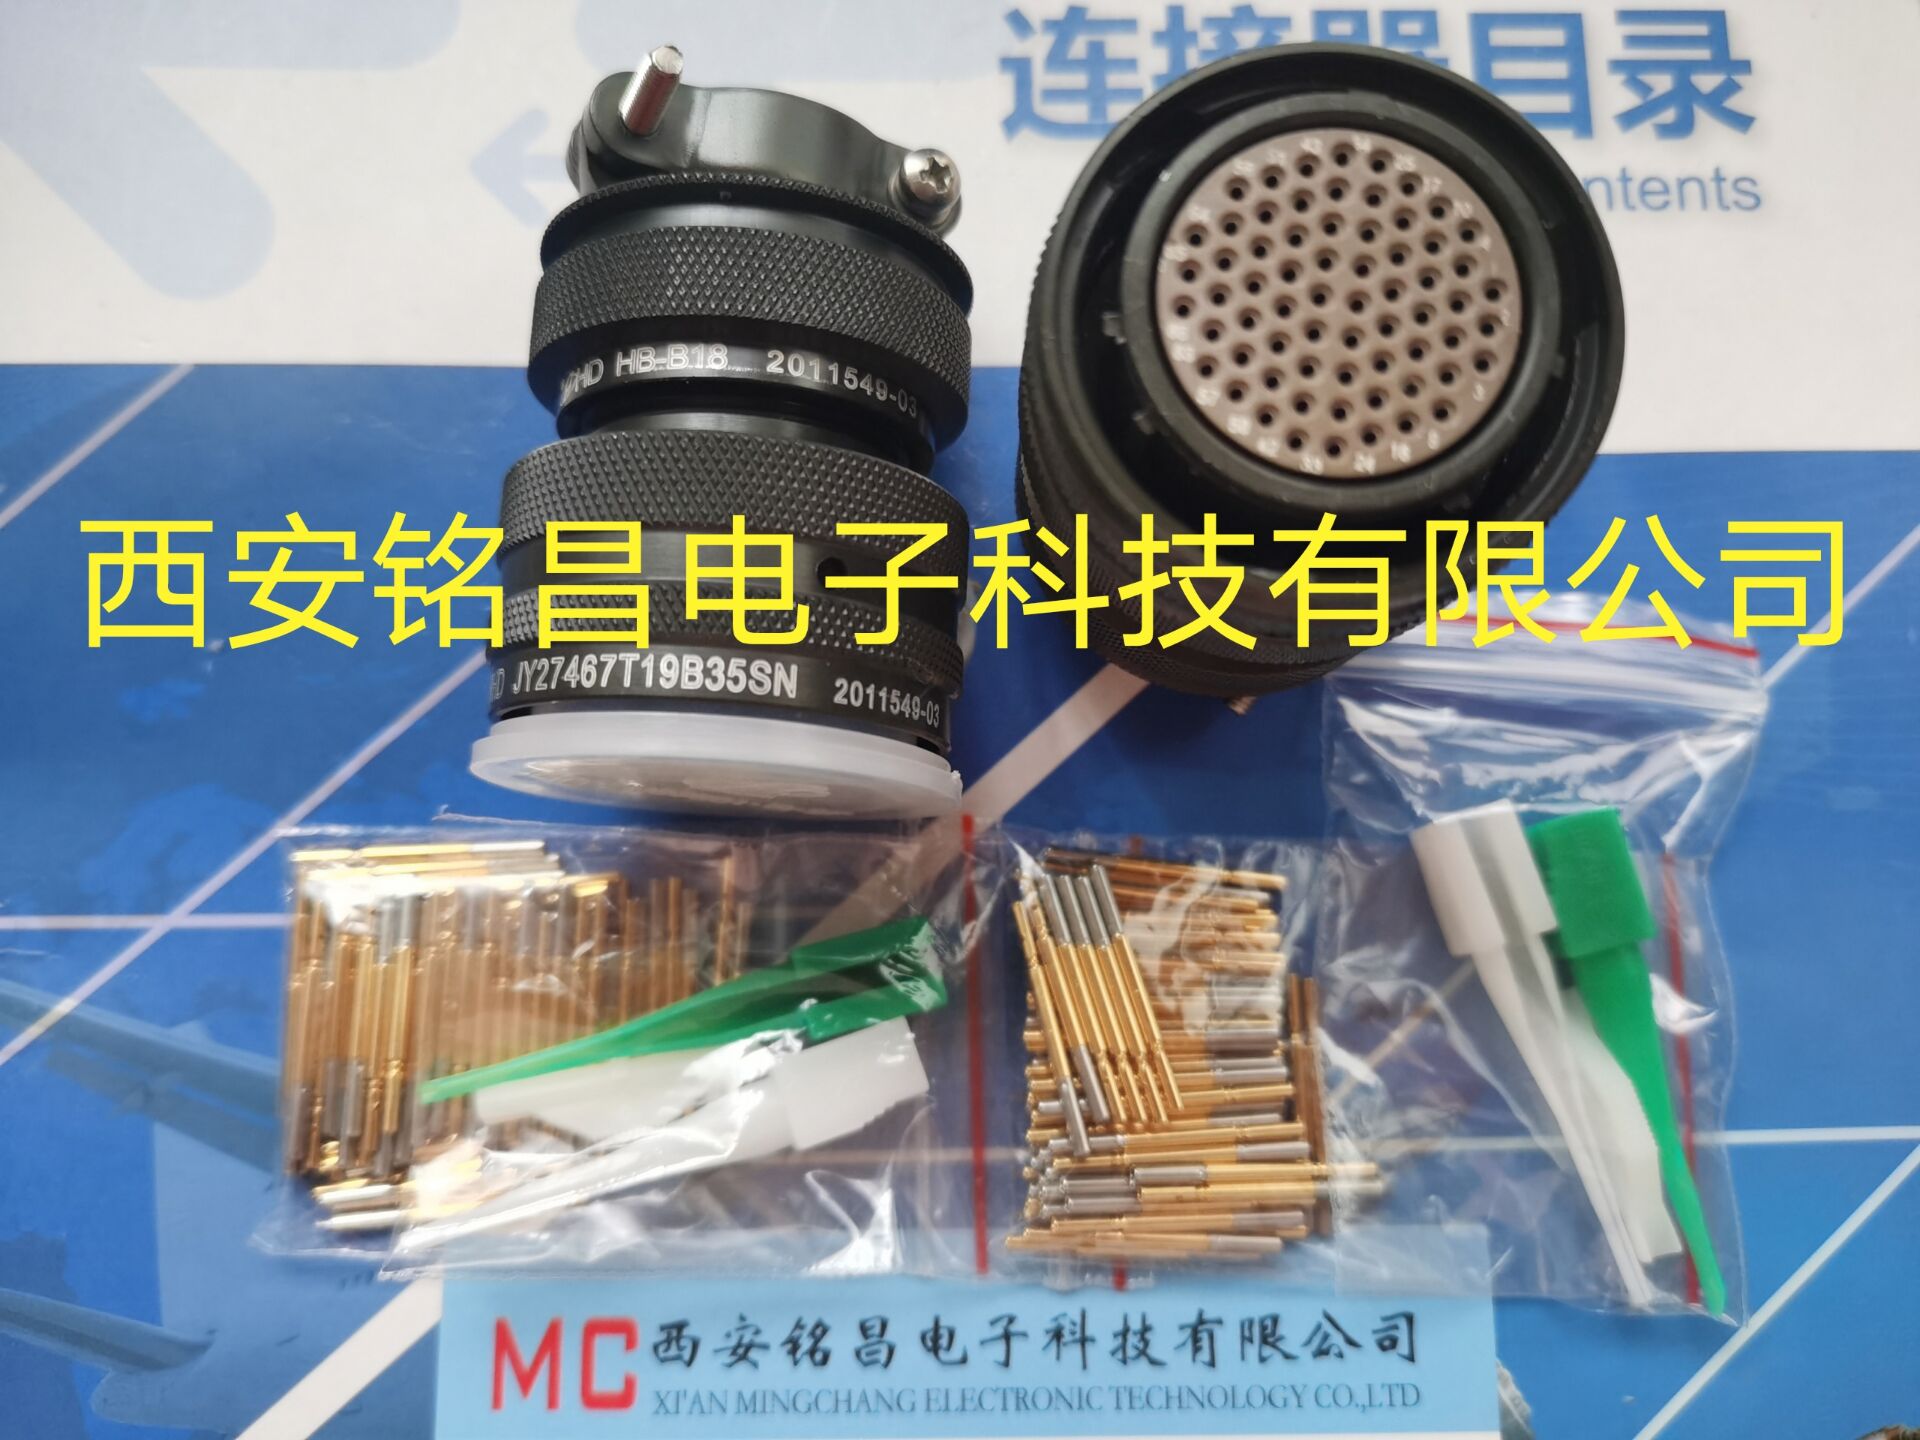 MCDZ西安铭昌销售JY27656E09F35CN-H圆形连接器-厂家直销